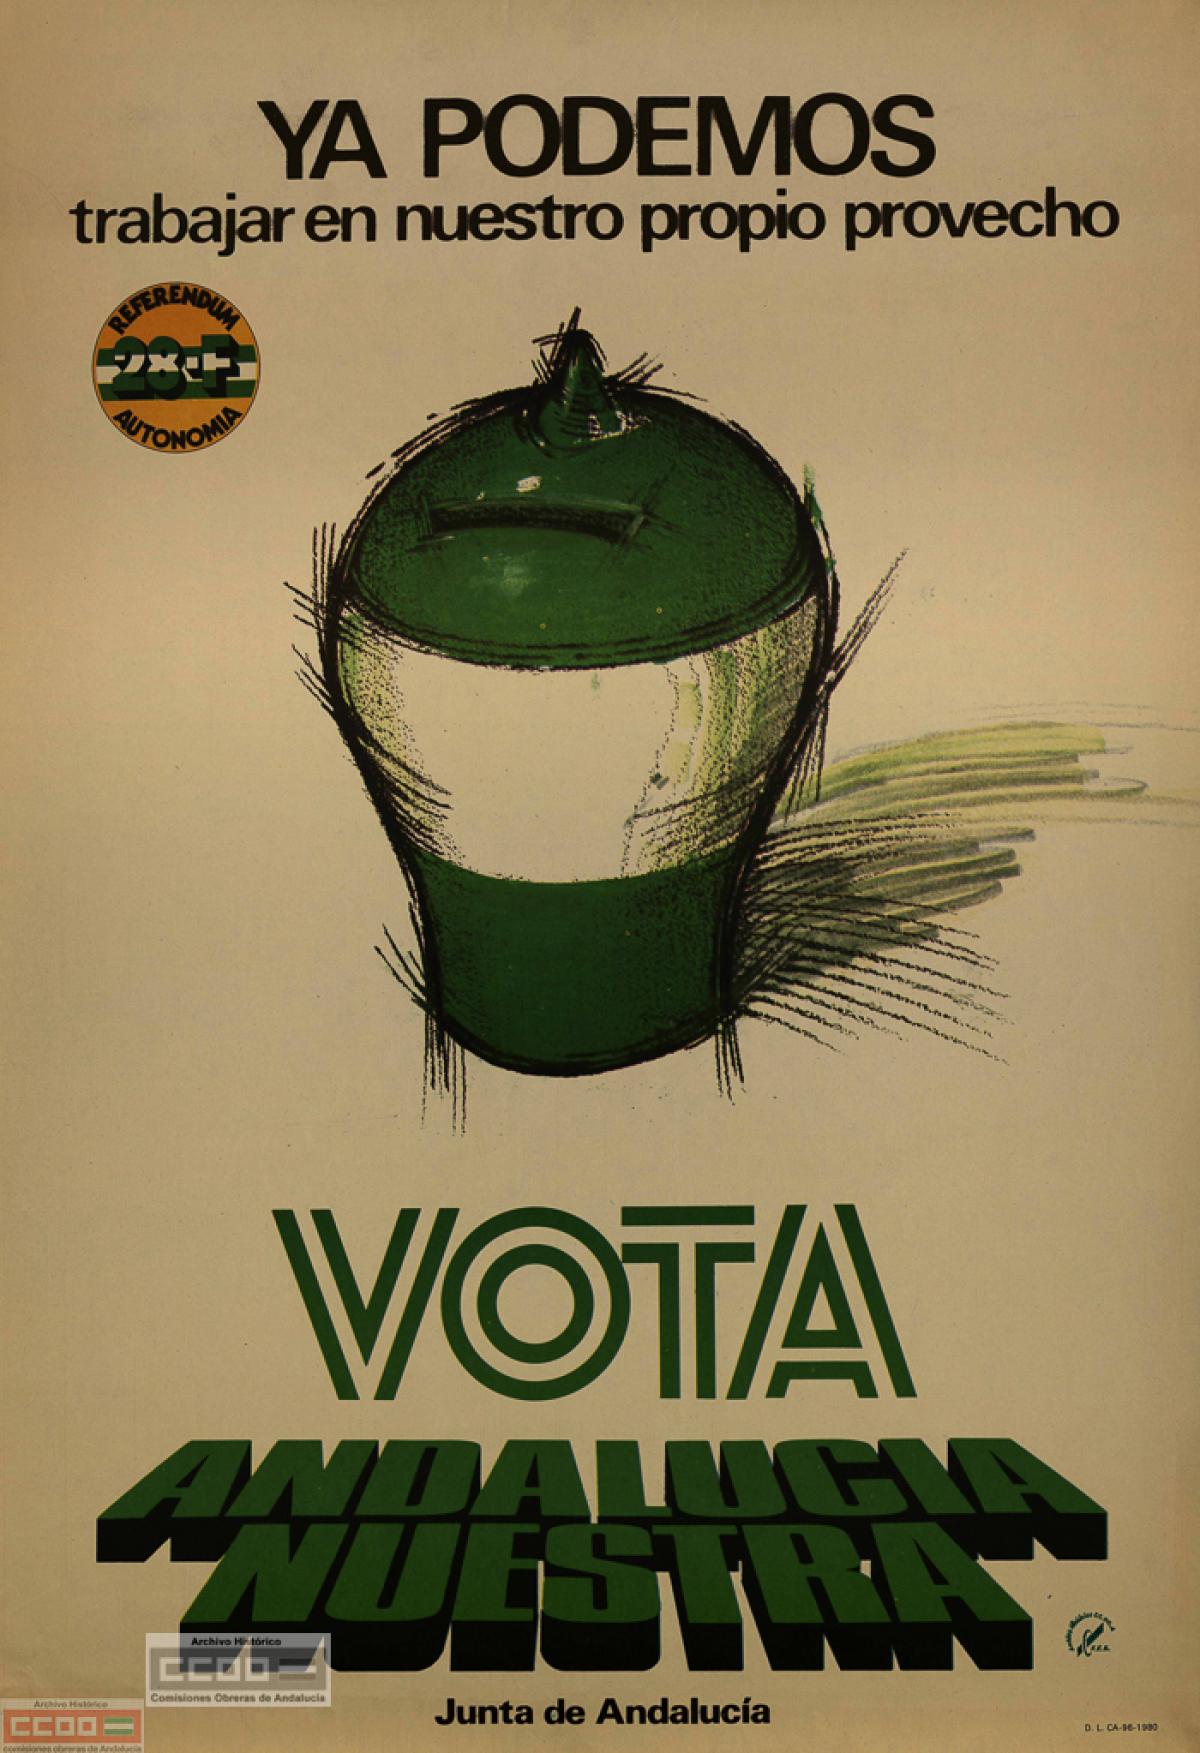 Cartel de la Junta de Andaluca para el referndum del 28F, 1980